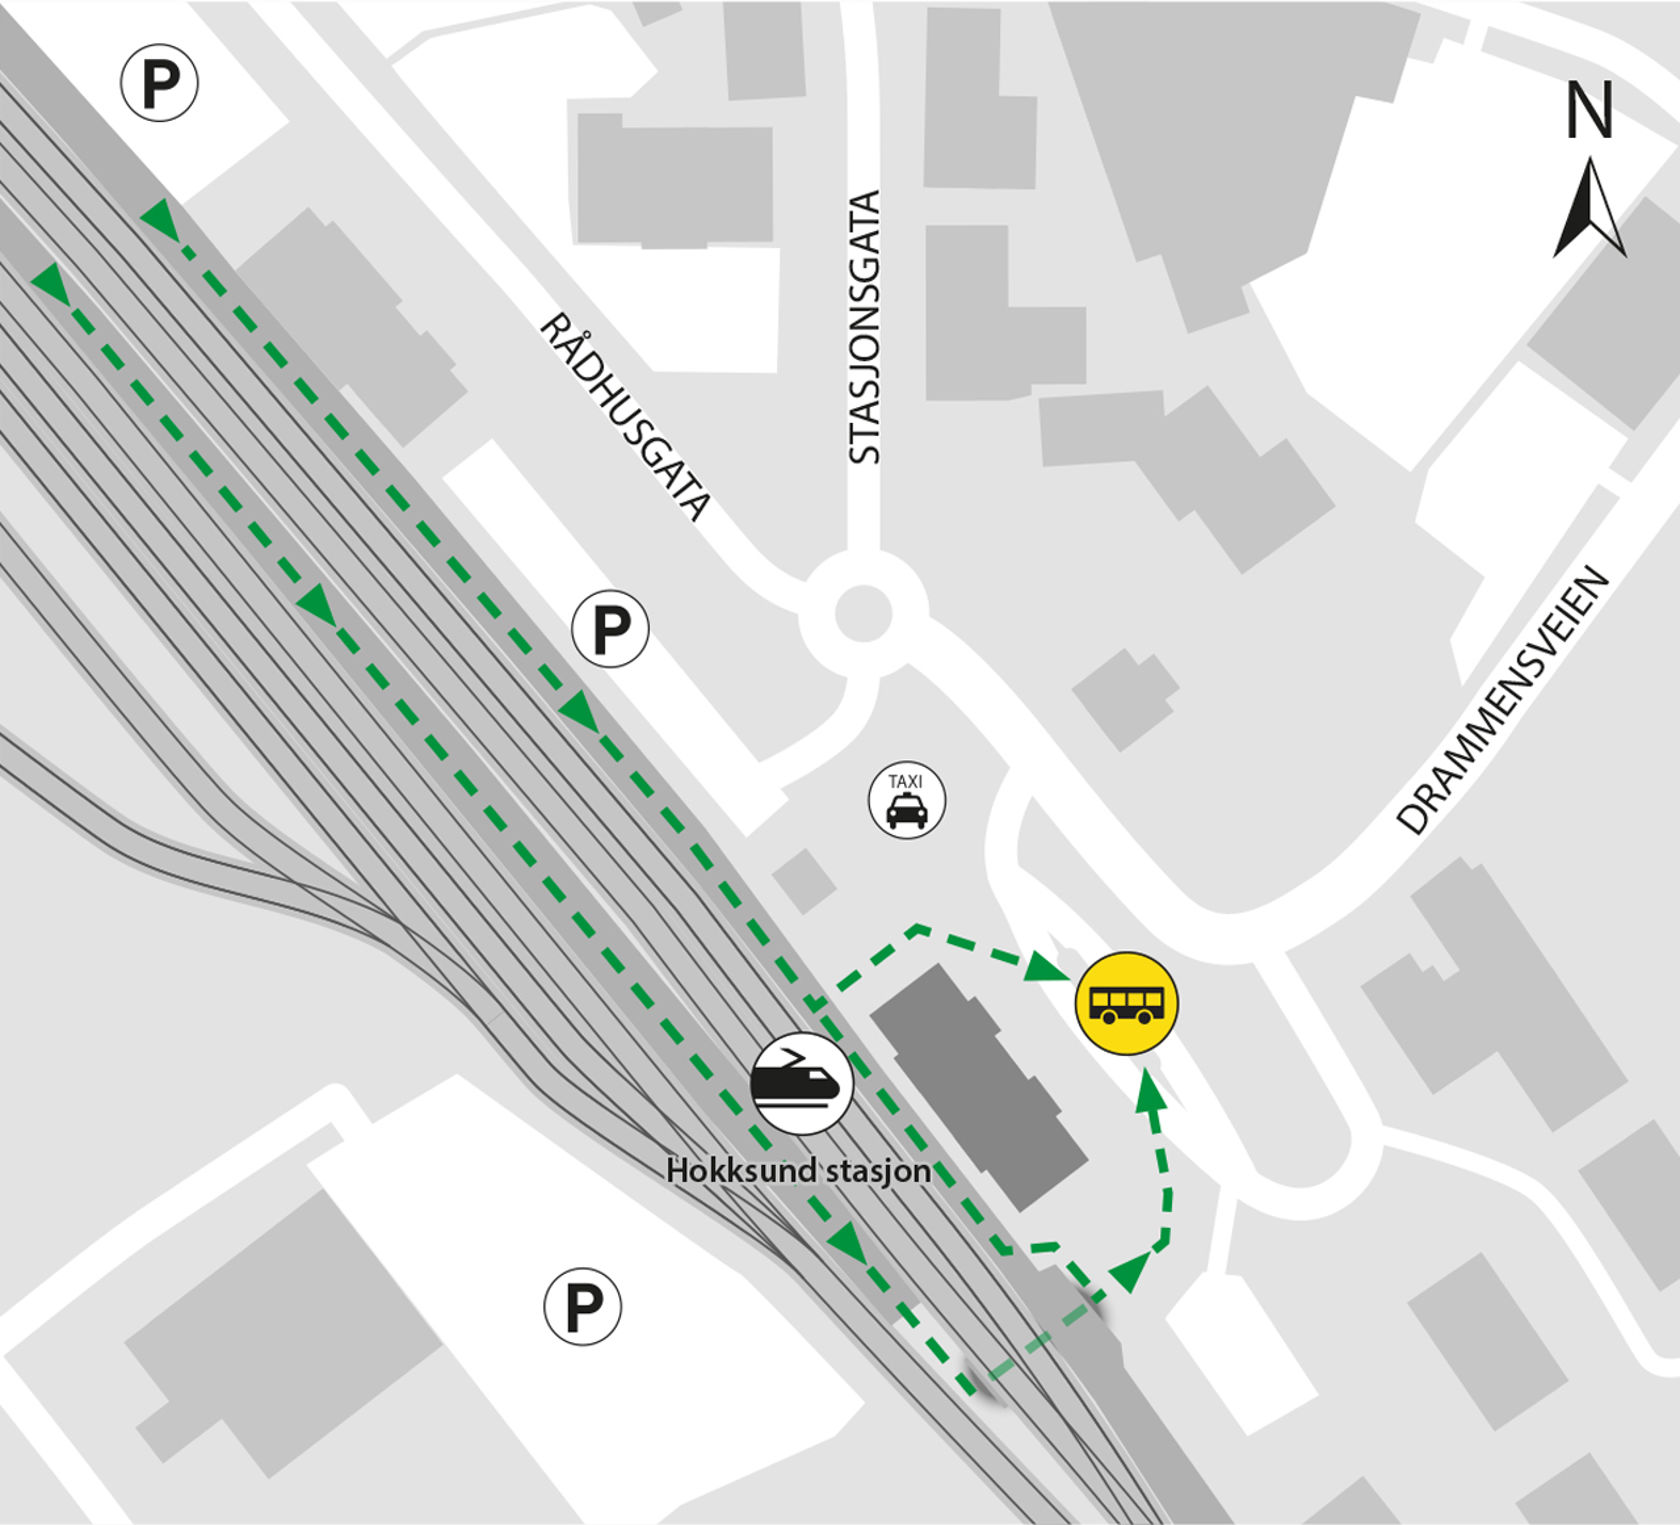 Kart som viser at bussene kjører fra bussholdeplassen Hokksund stasjon.